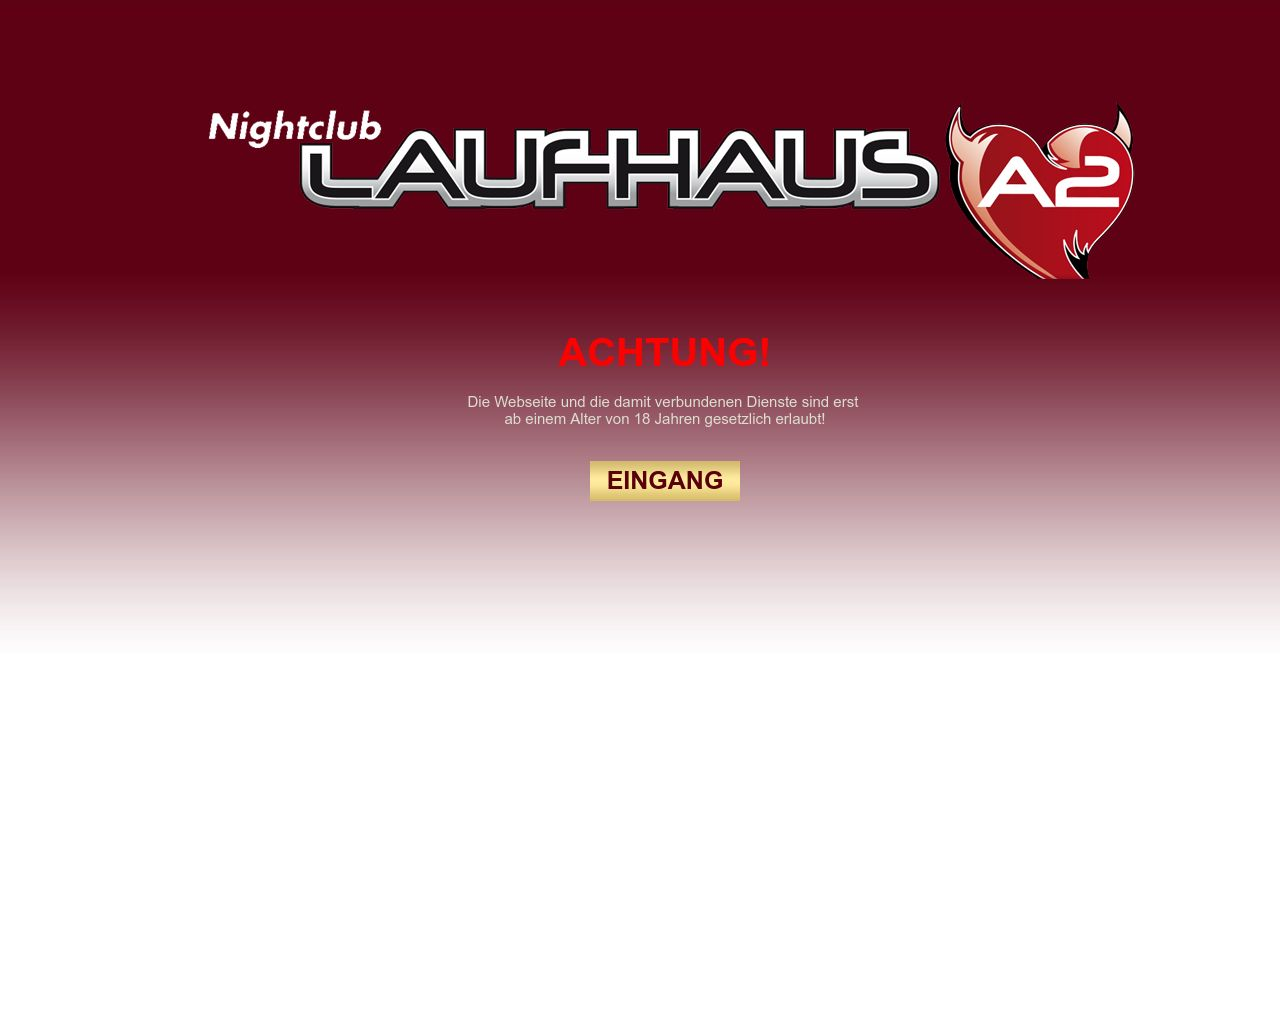 Bild Website laufhaus-b54.at in 1280x1024